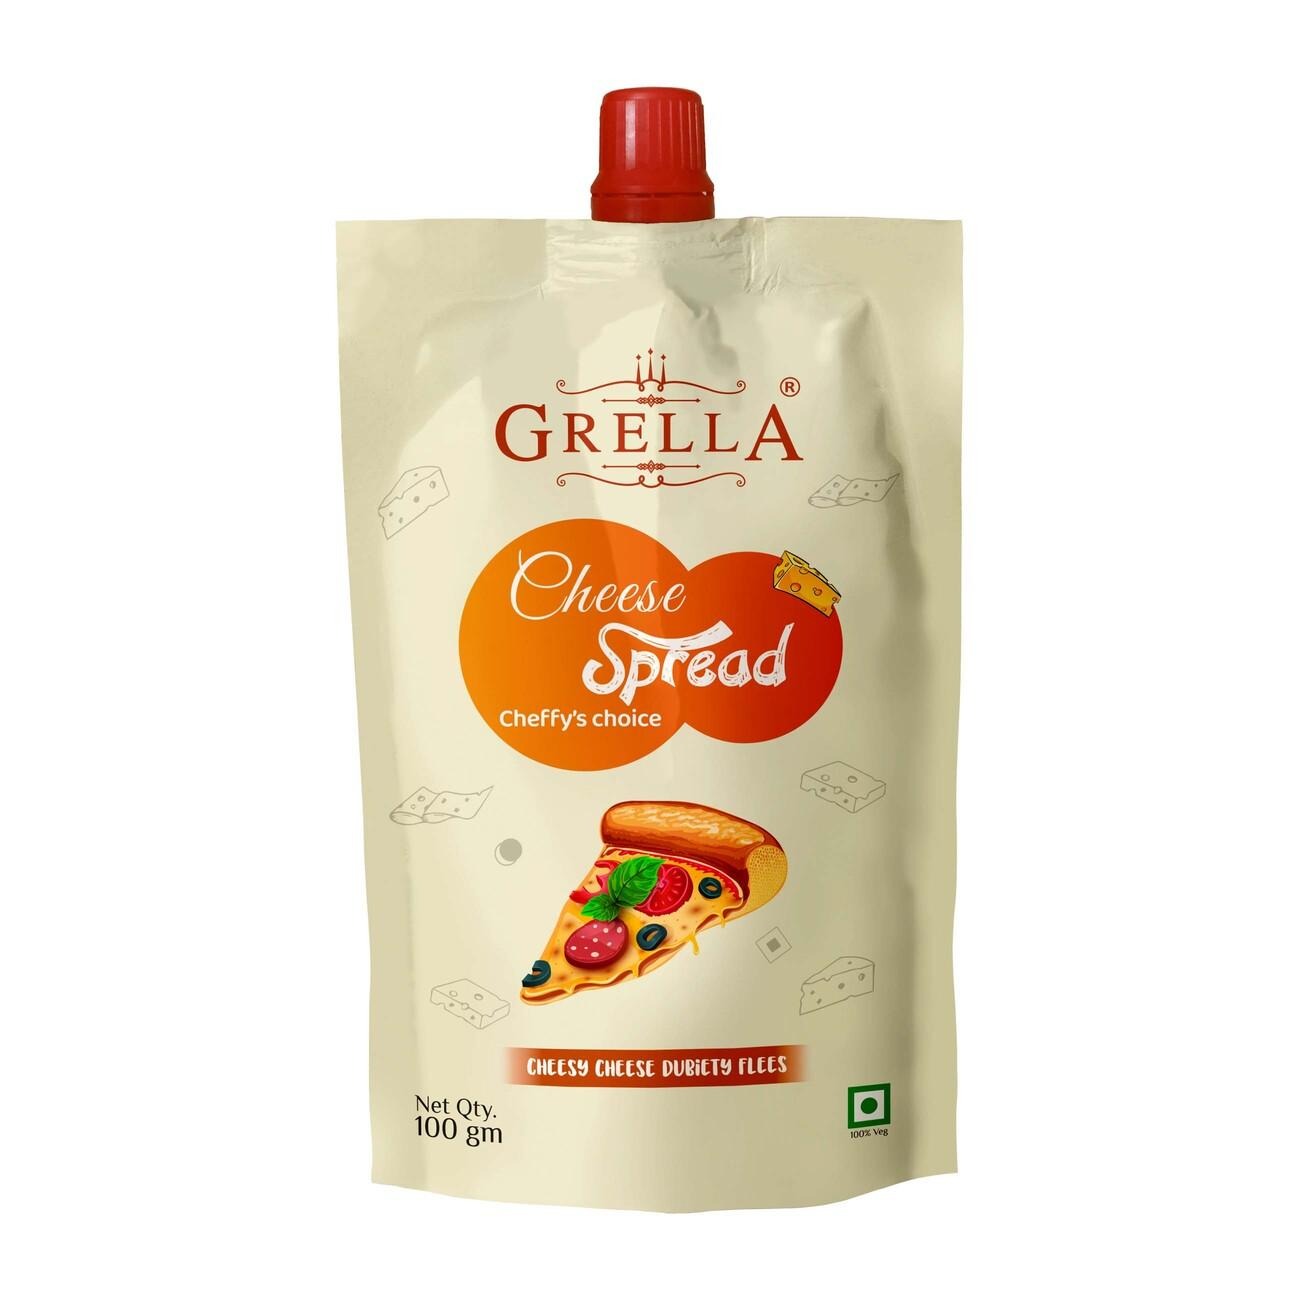 Grella Cheese Spread